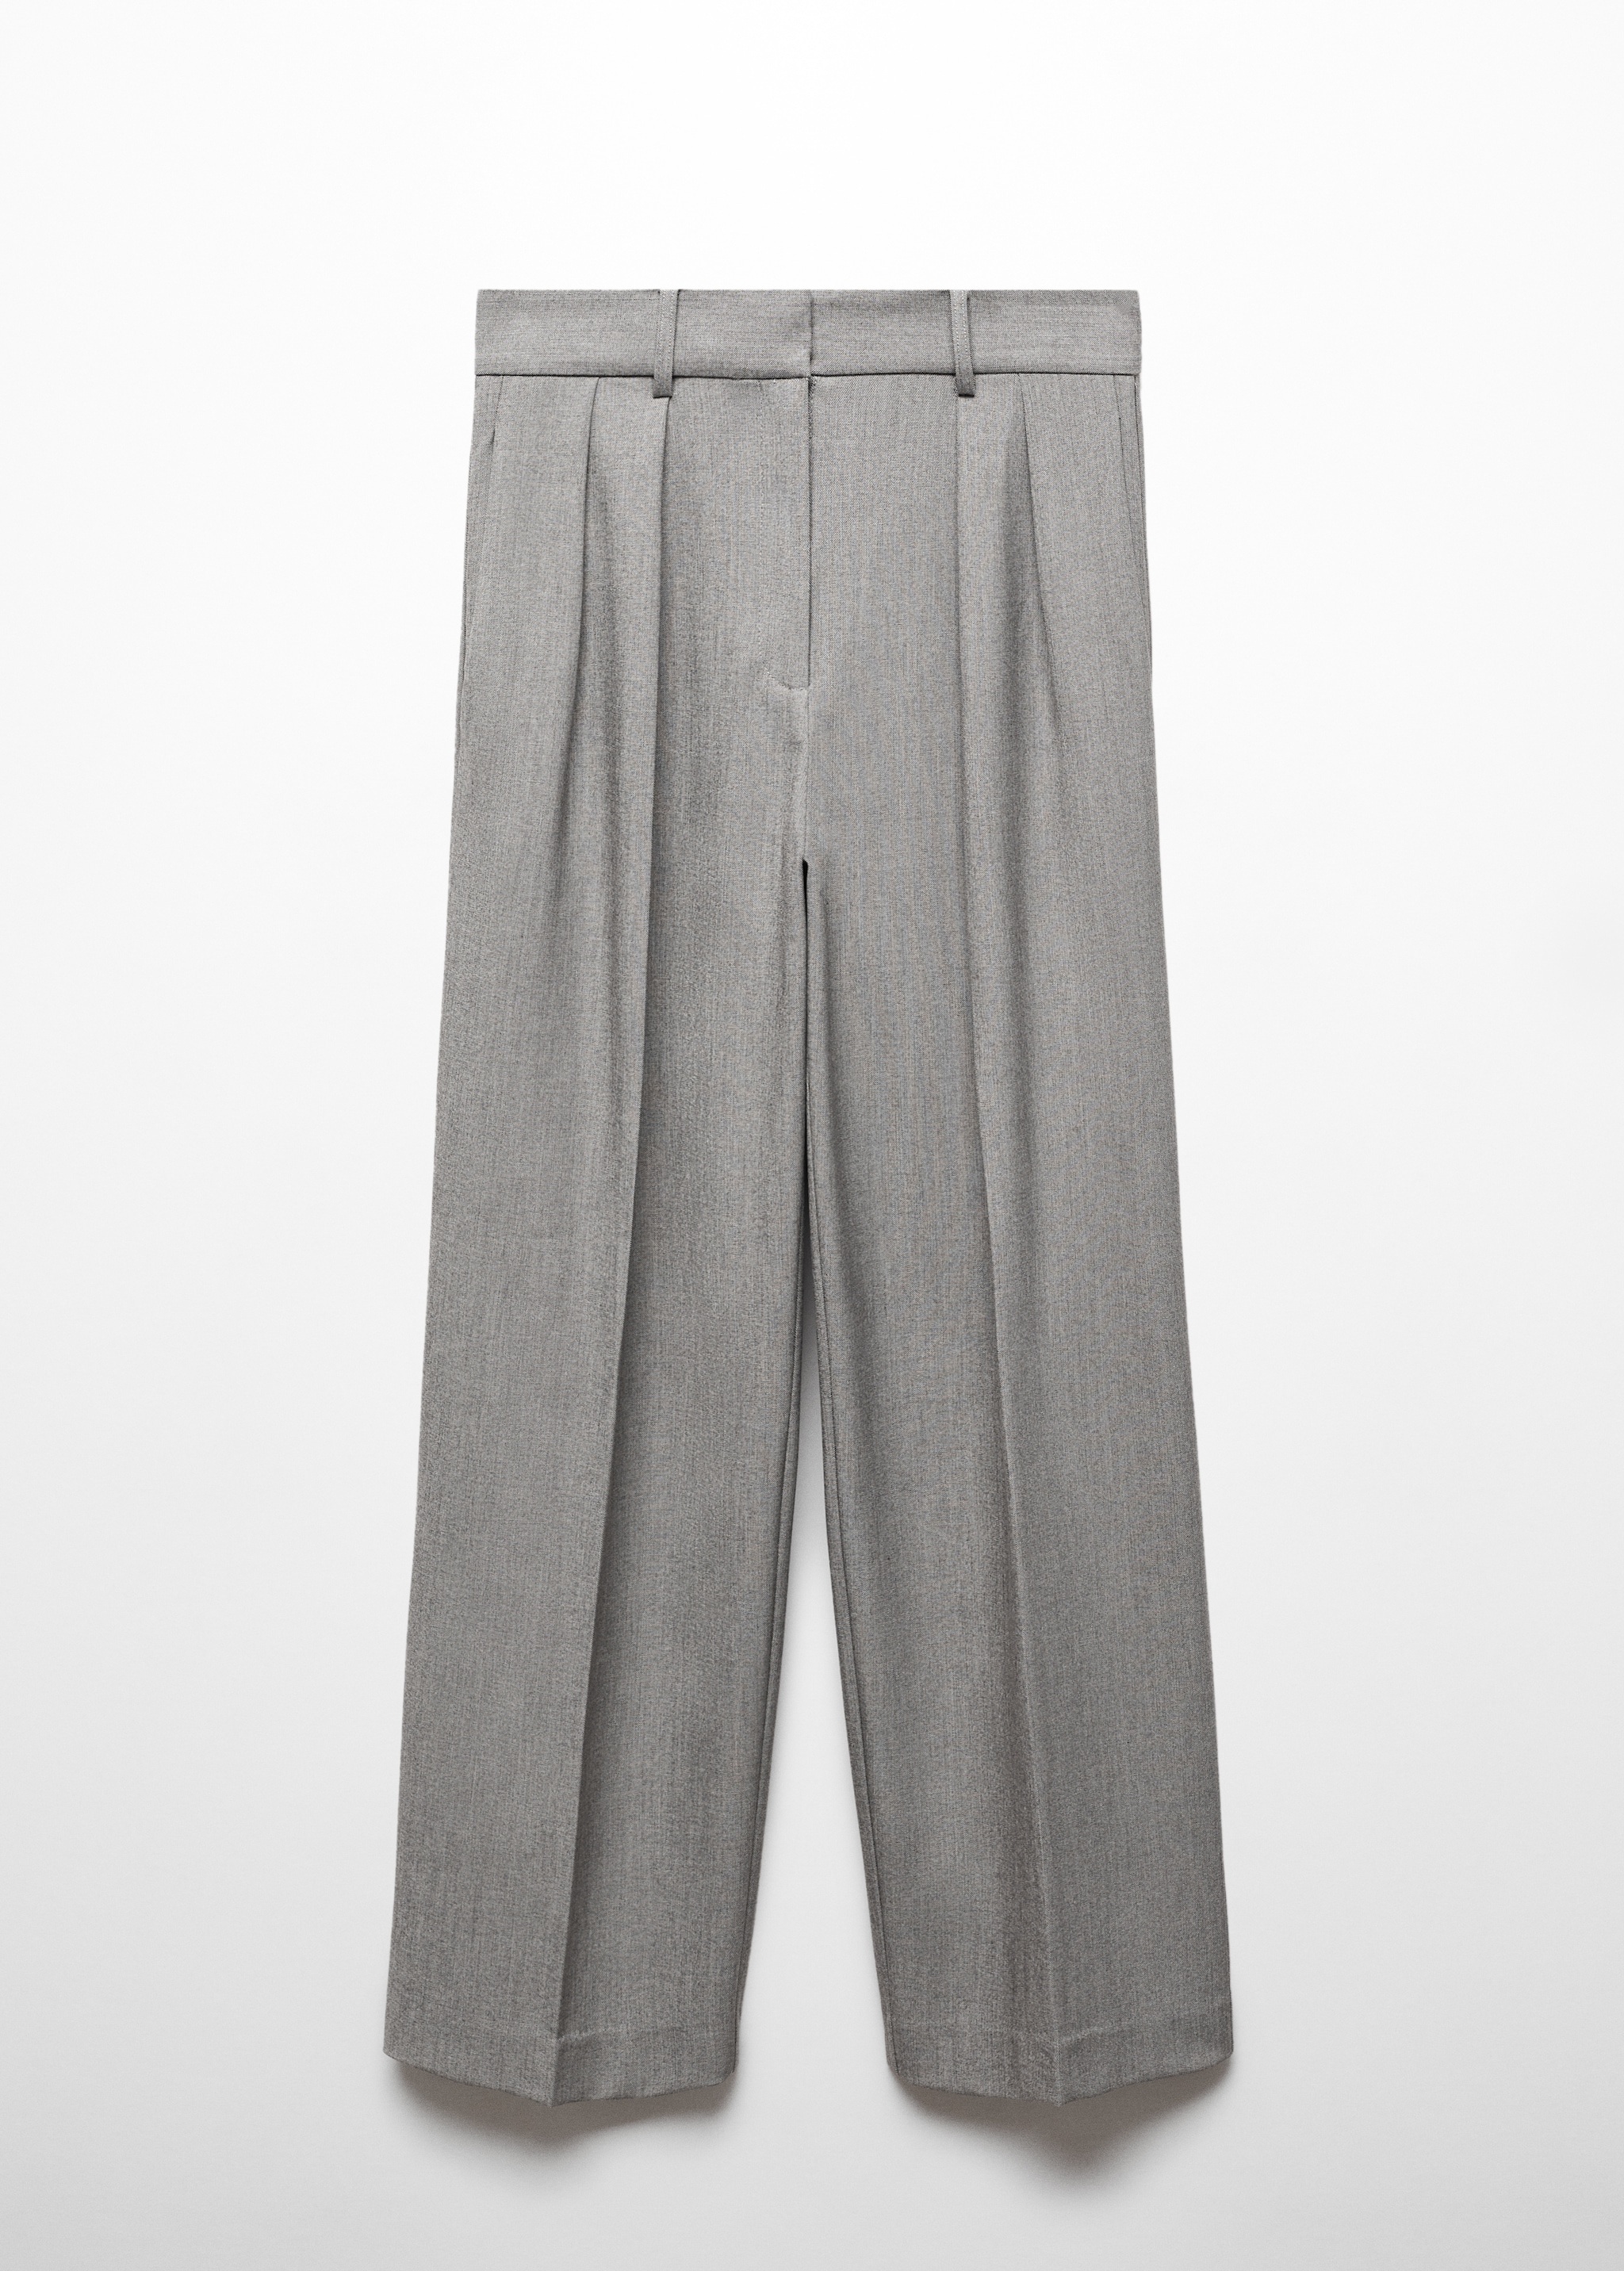 Pilili kumaş pantolonu - Modelsiz ürün